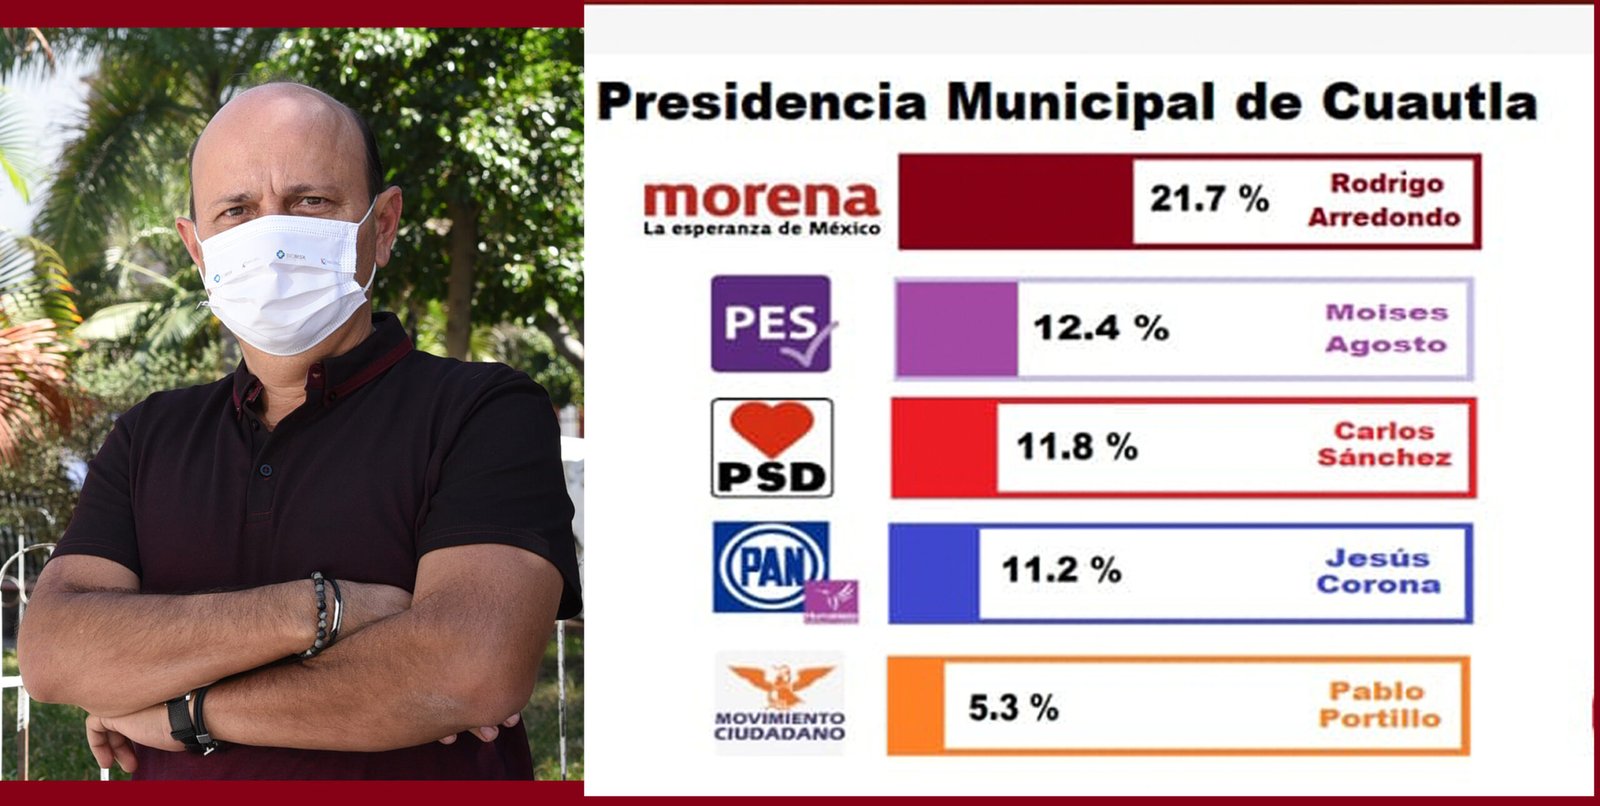 Rodrigo Arredondo encabeza en el primer lugar de las preferencias  ciudadanas.